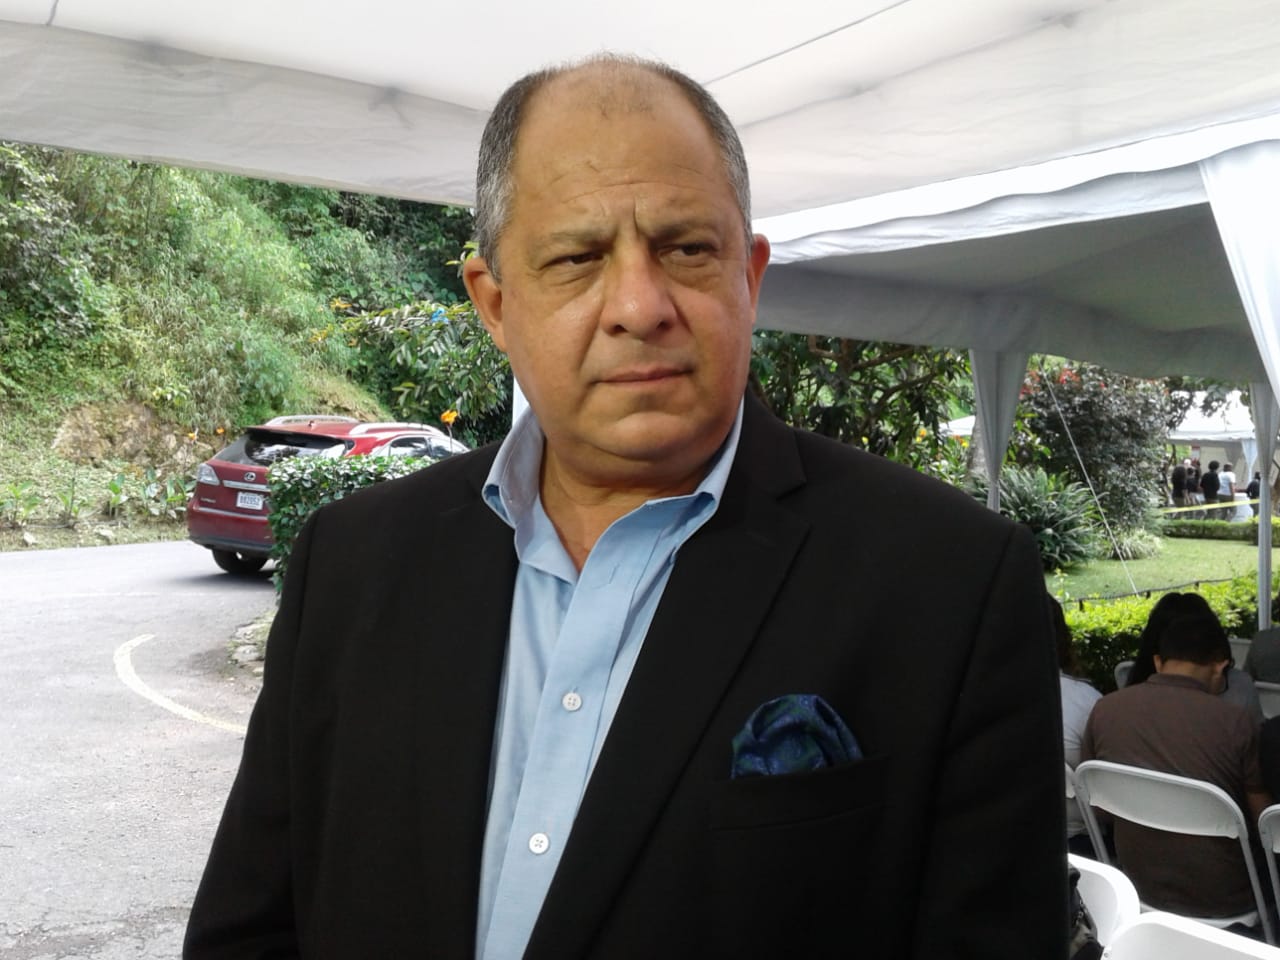 Expresidente Luis Guillermo Solís le dice al PAC que: “sin plata, no hay partido”